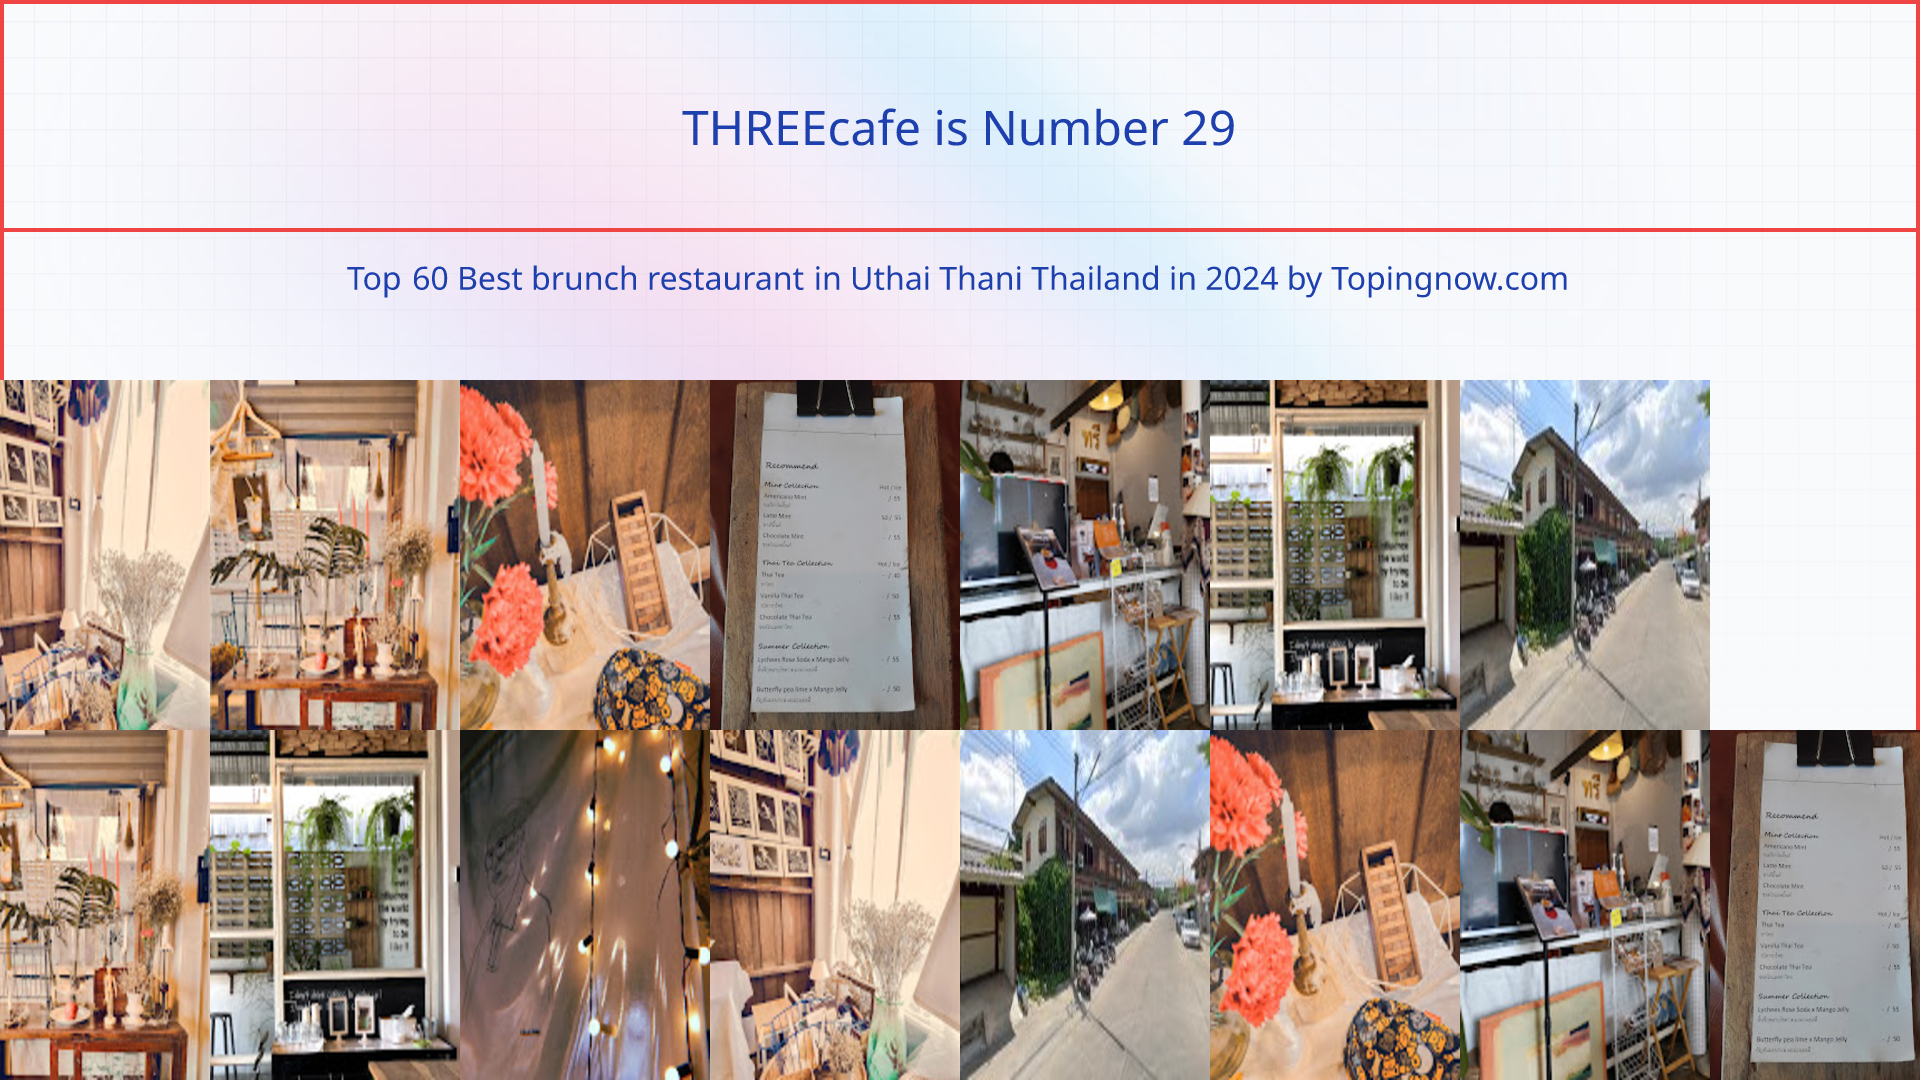 THREEcafe: Top 60 Best brunch restaurant in Uthai Thani Thailand in 2024